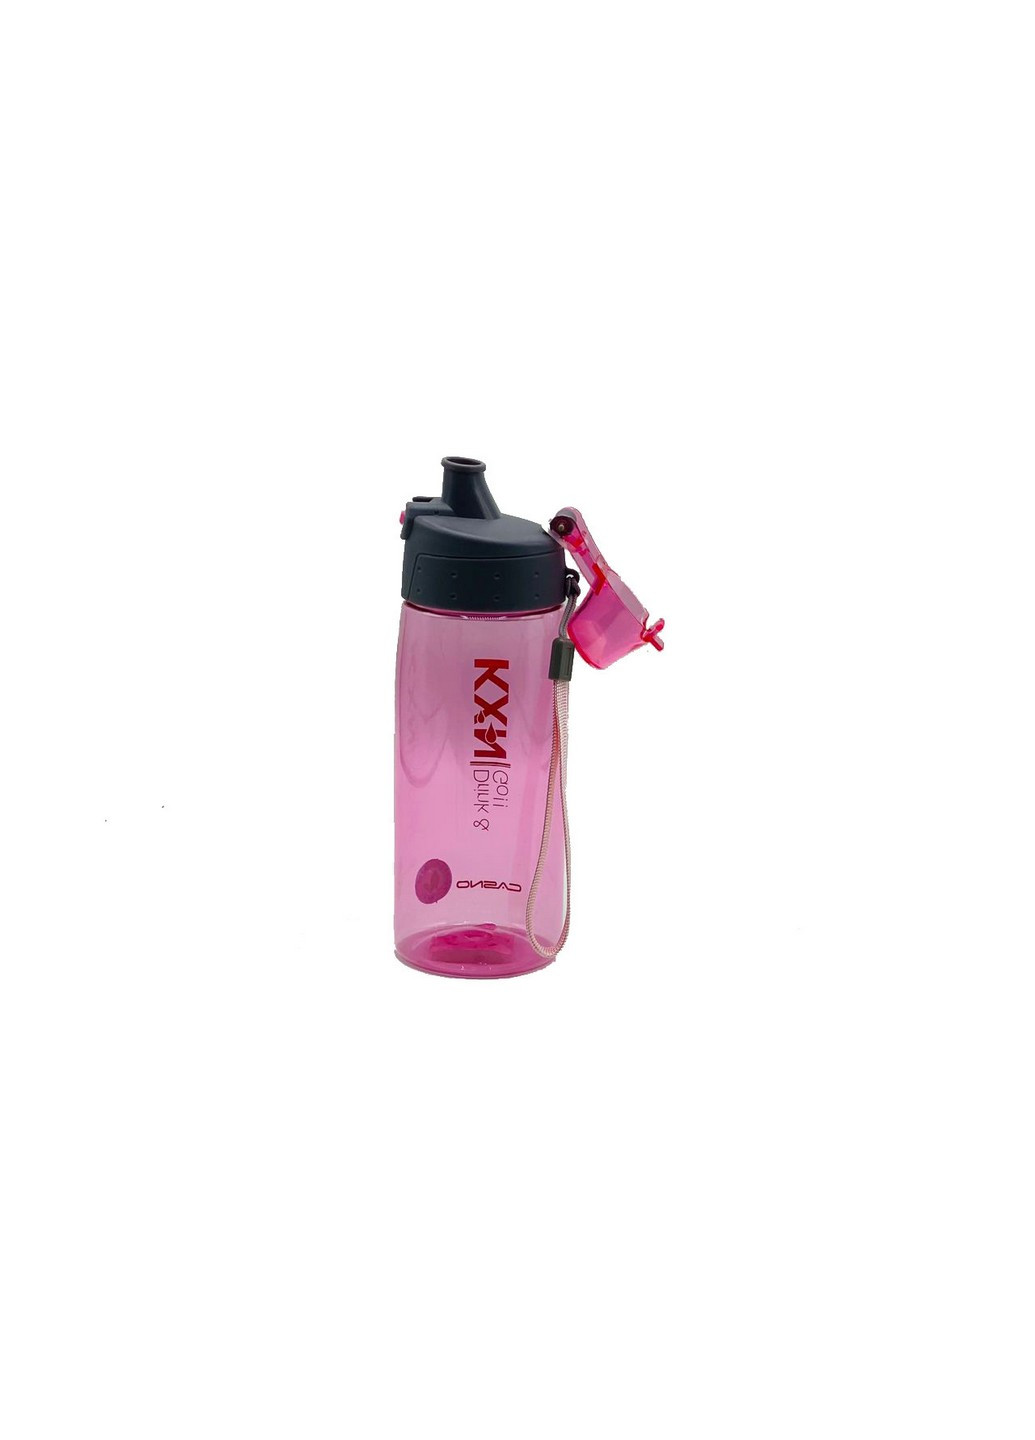 Пляшка для води спортивна 580 мл Casno (253063234)